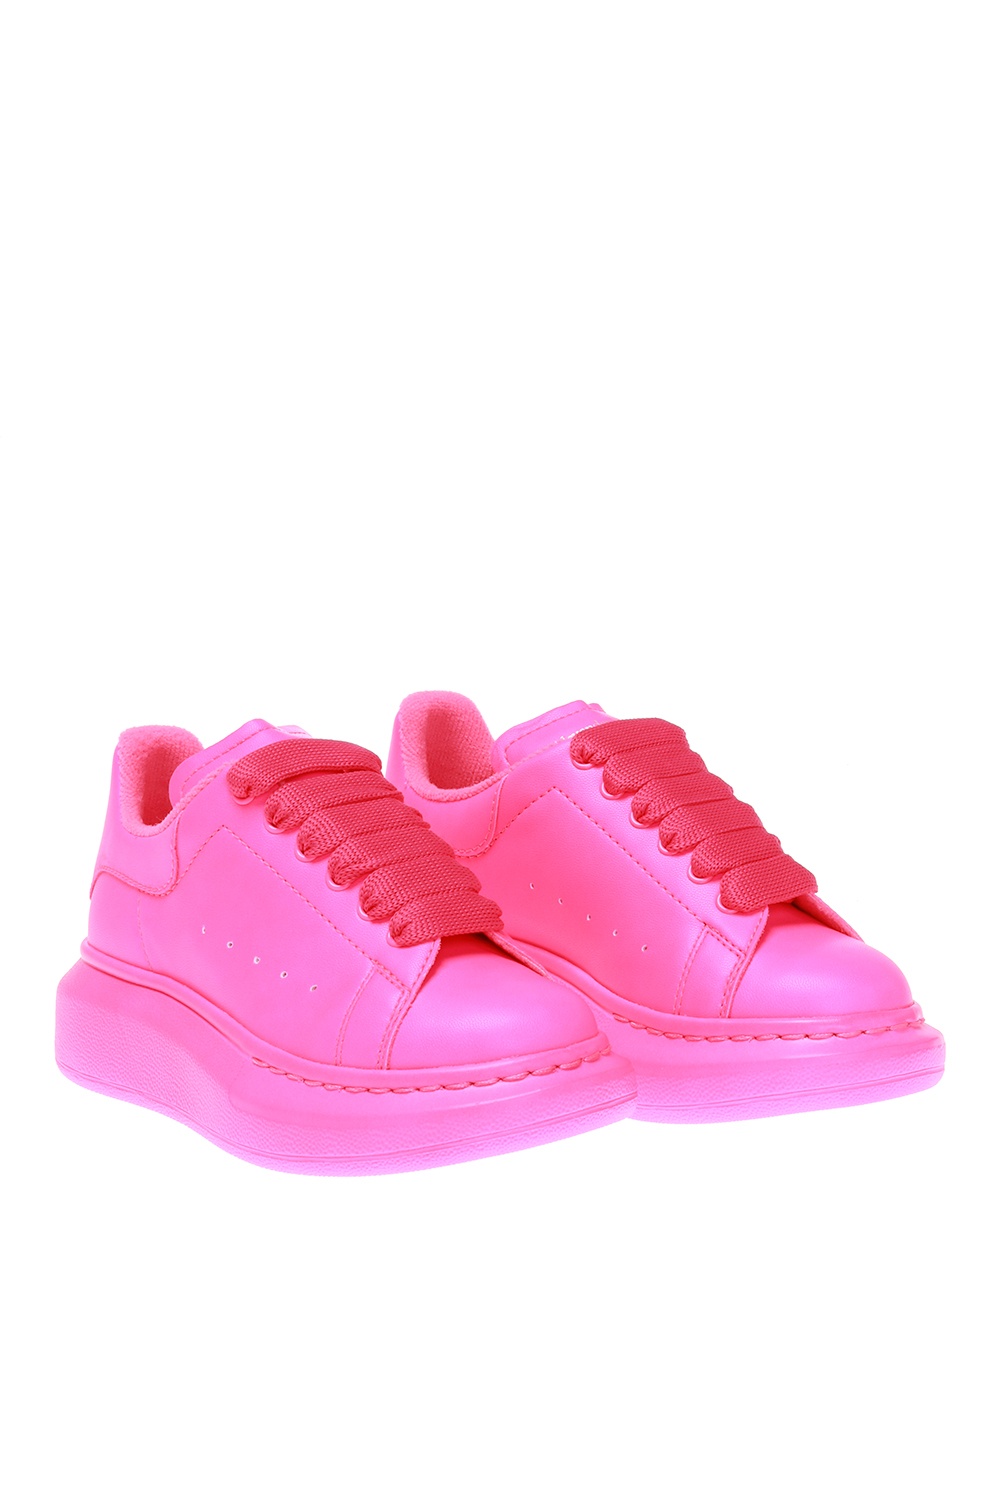 alexander mcqueen sneakers neon pink